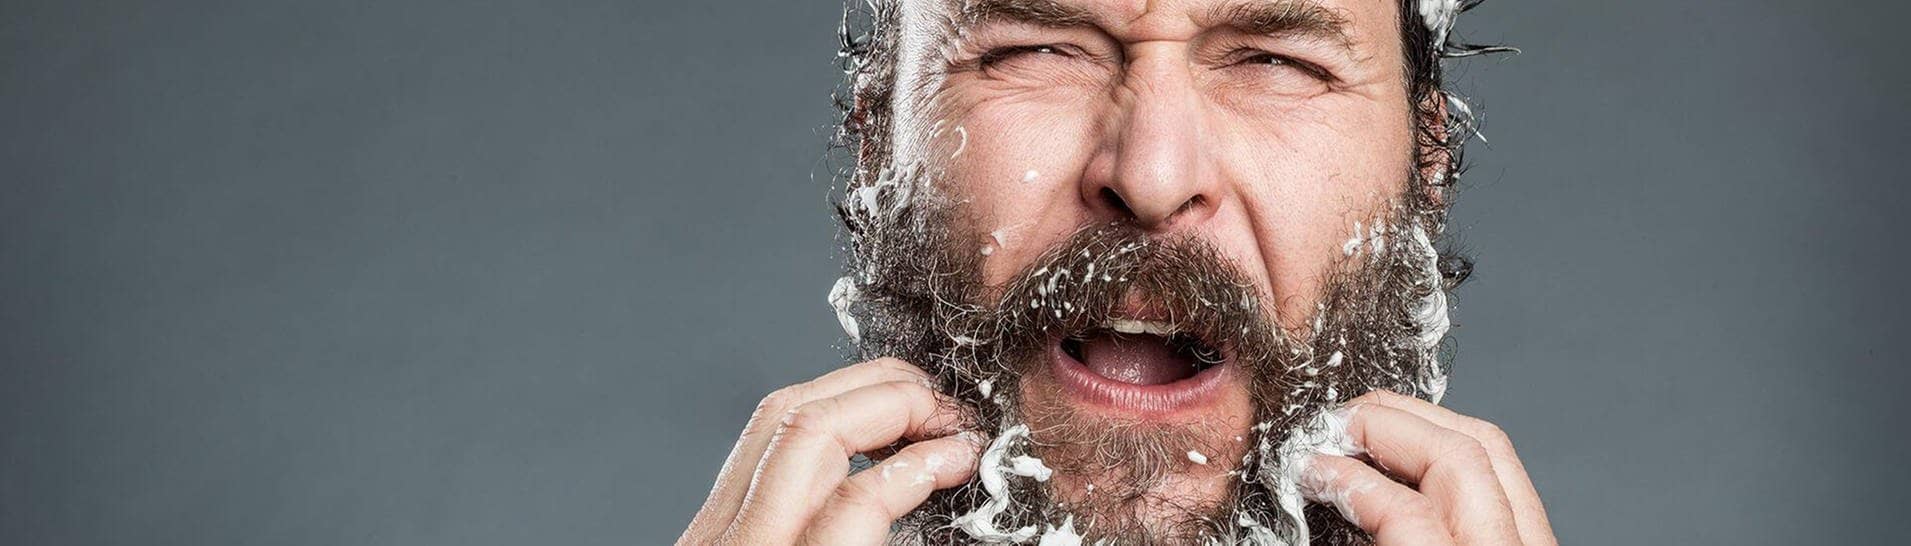 Mann mit Bart kämpft mit Anti-Schuppen-Shampoo (Foto: imago / Photocase)